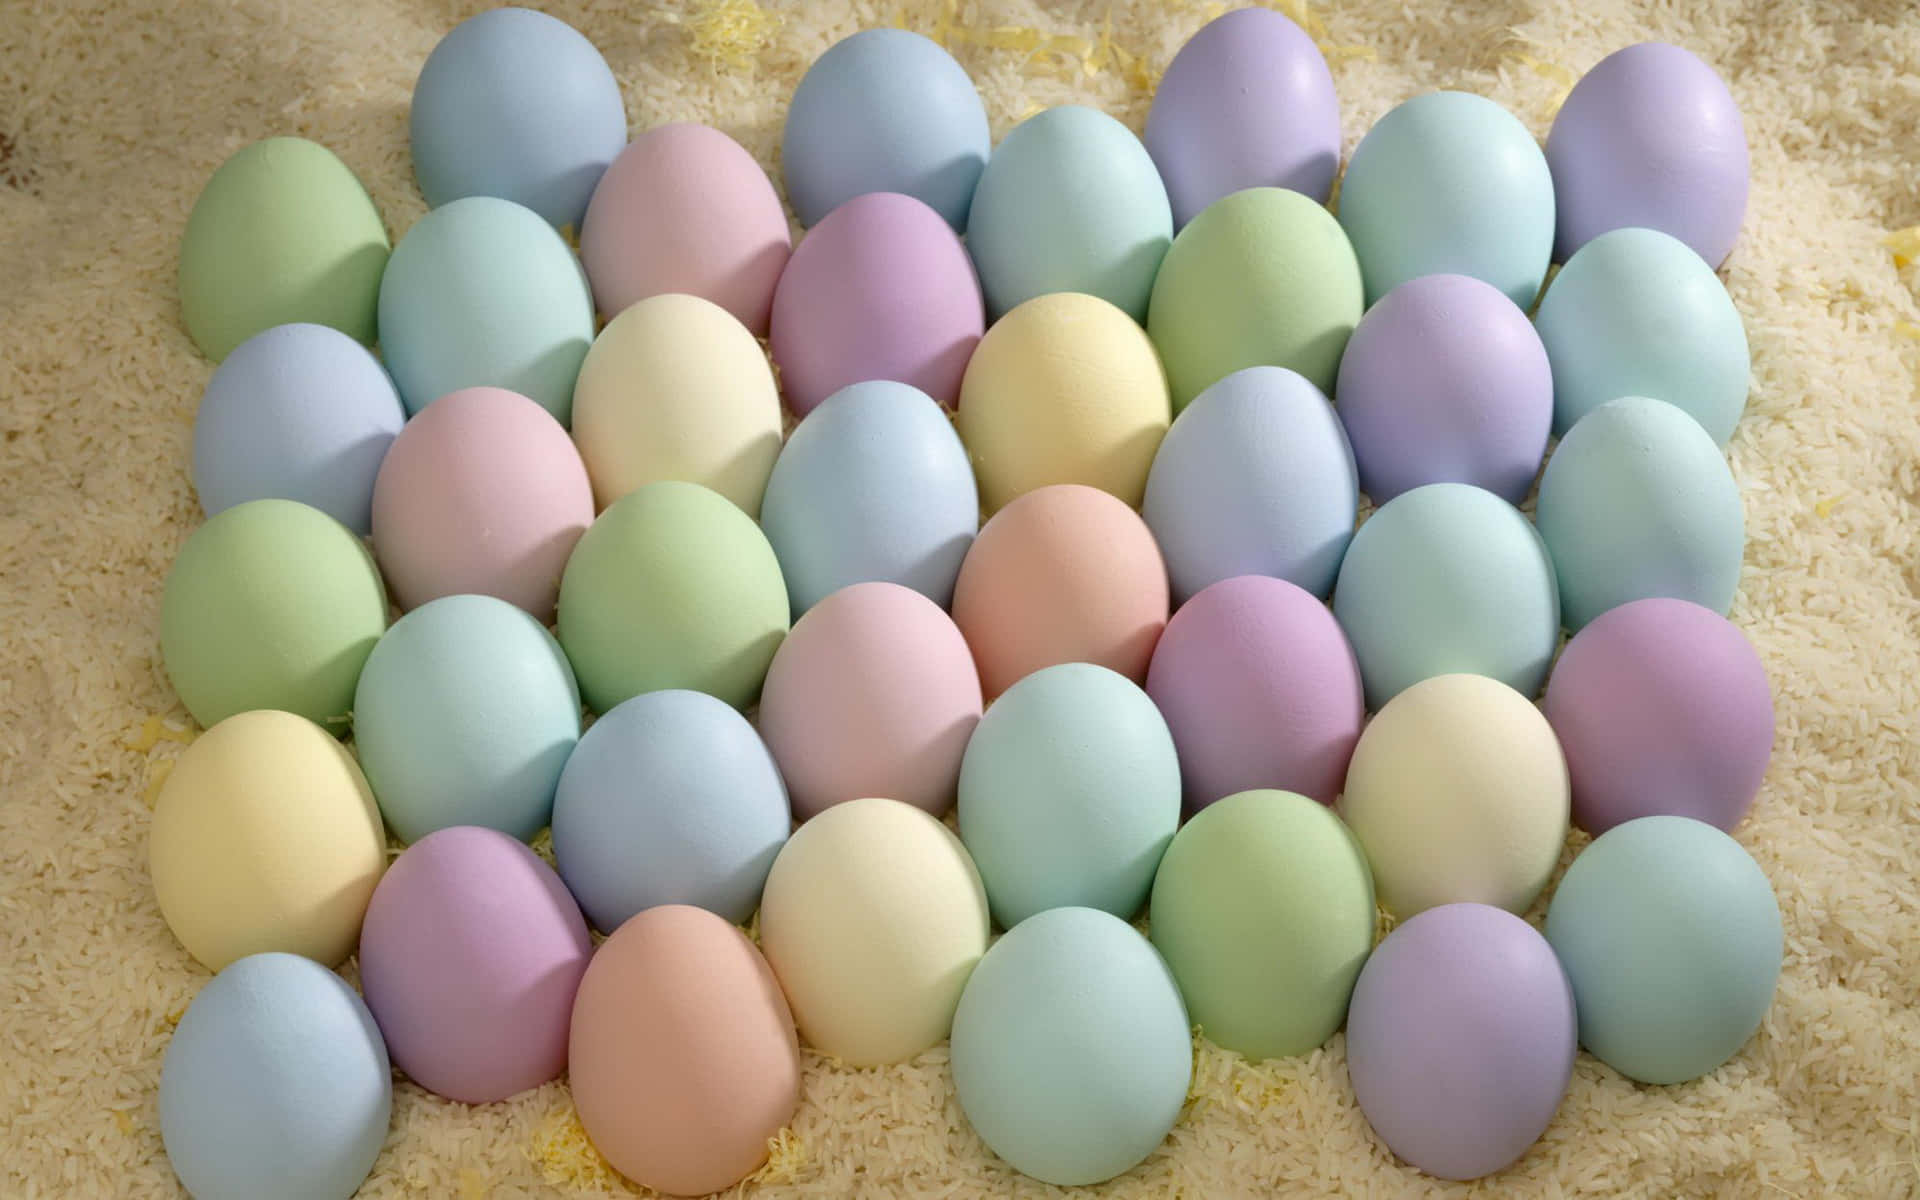 Leckerefrische Eier In Ihrer Natürlichen Umgebung